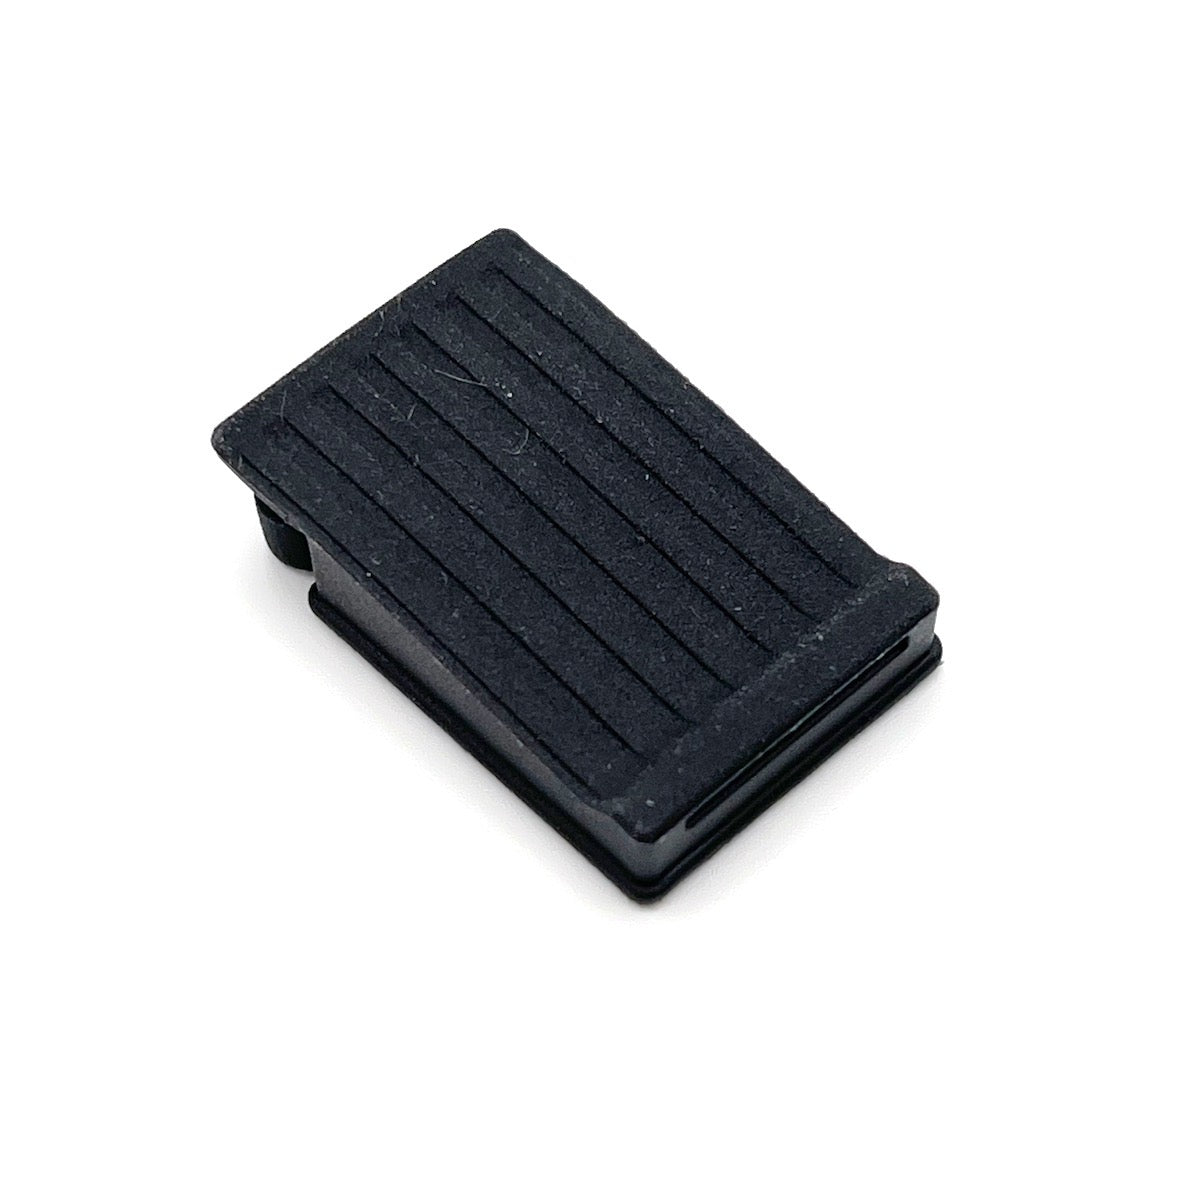 Rubber cap microSD for Garmin Zumo XT (flexible, waterproof) New